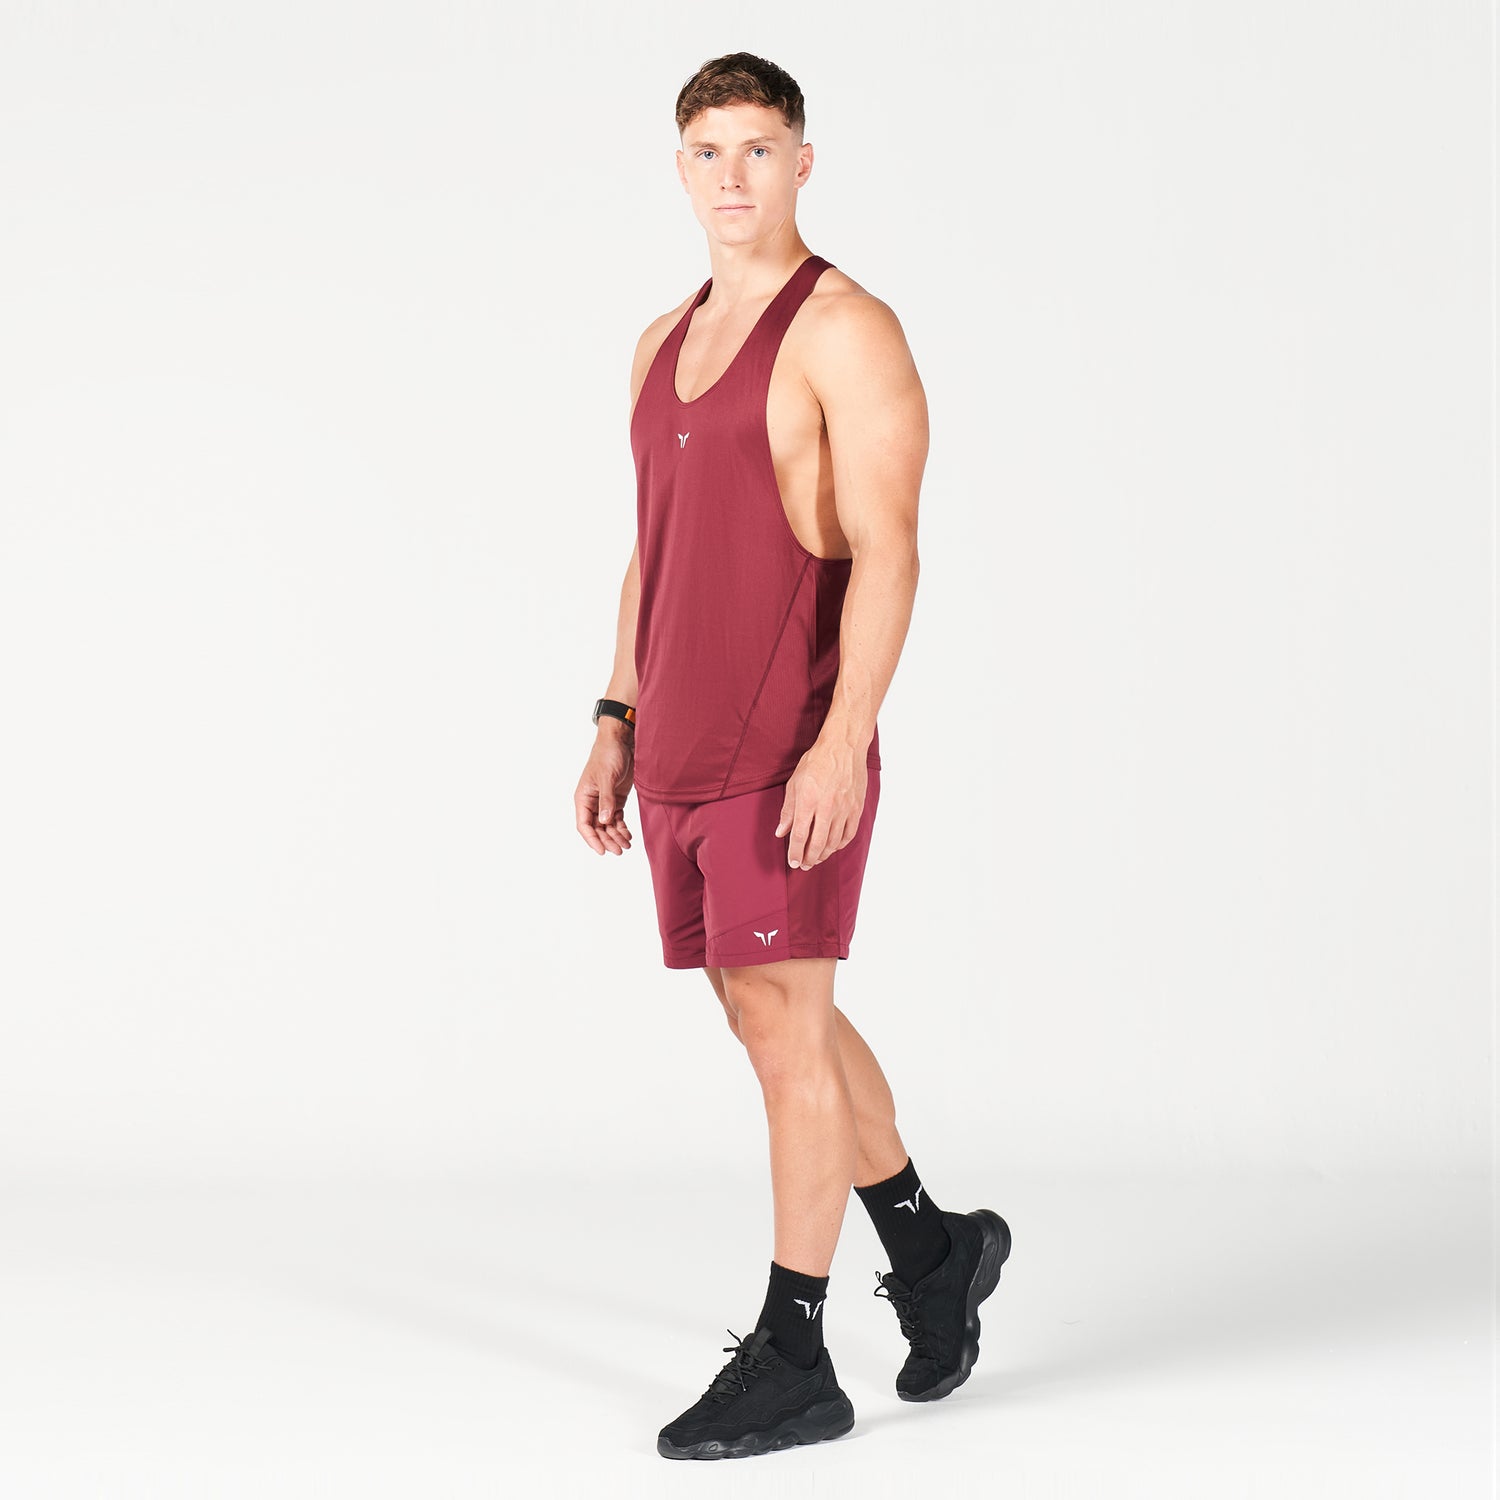 squatwolf-gym-wear-next-gen-hypercool-stringer-burgundy-stringer-vests-for-men